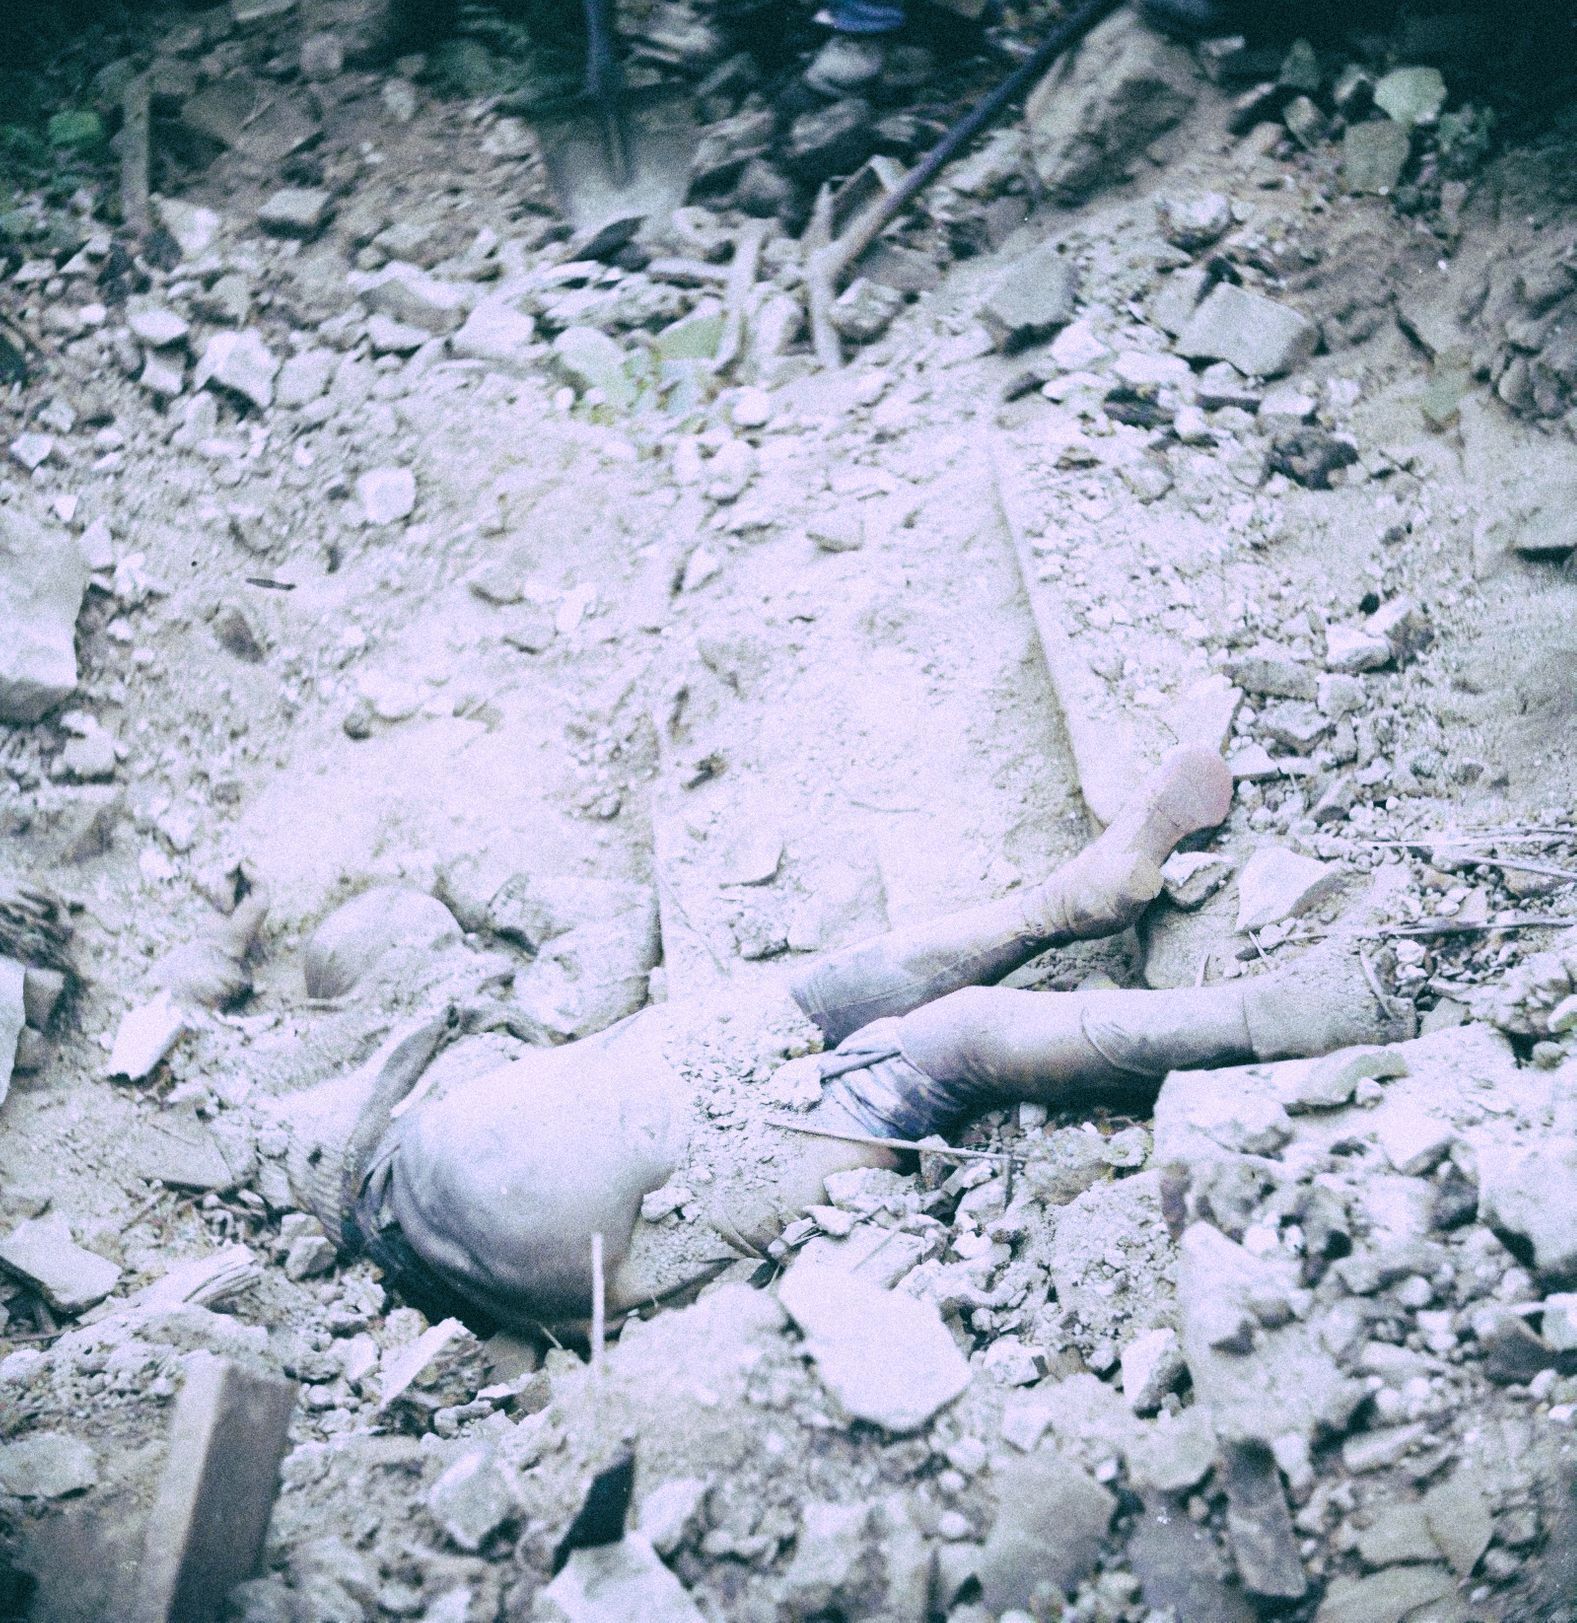 Jednorázové užití / Fotogalerie / Tak to vypadalo, když Prahu na sklonku války plenilo bombardování